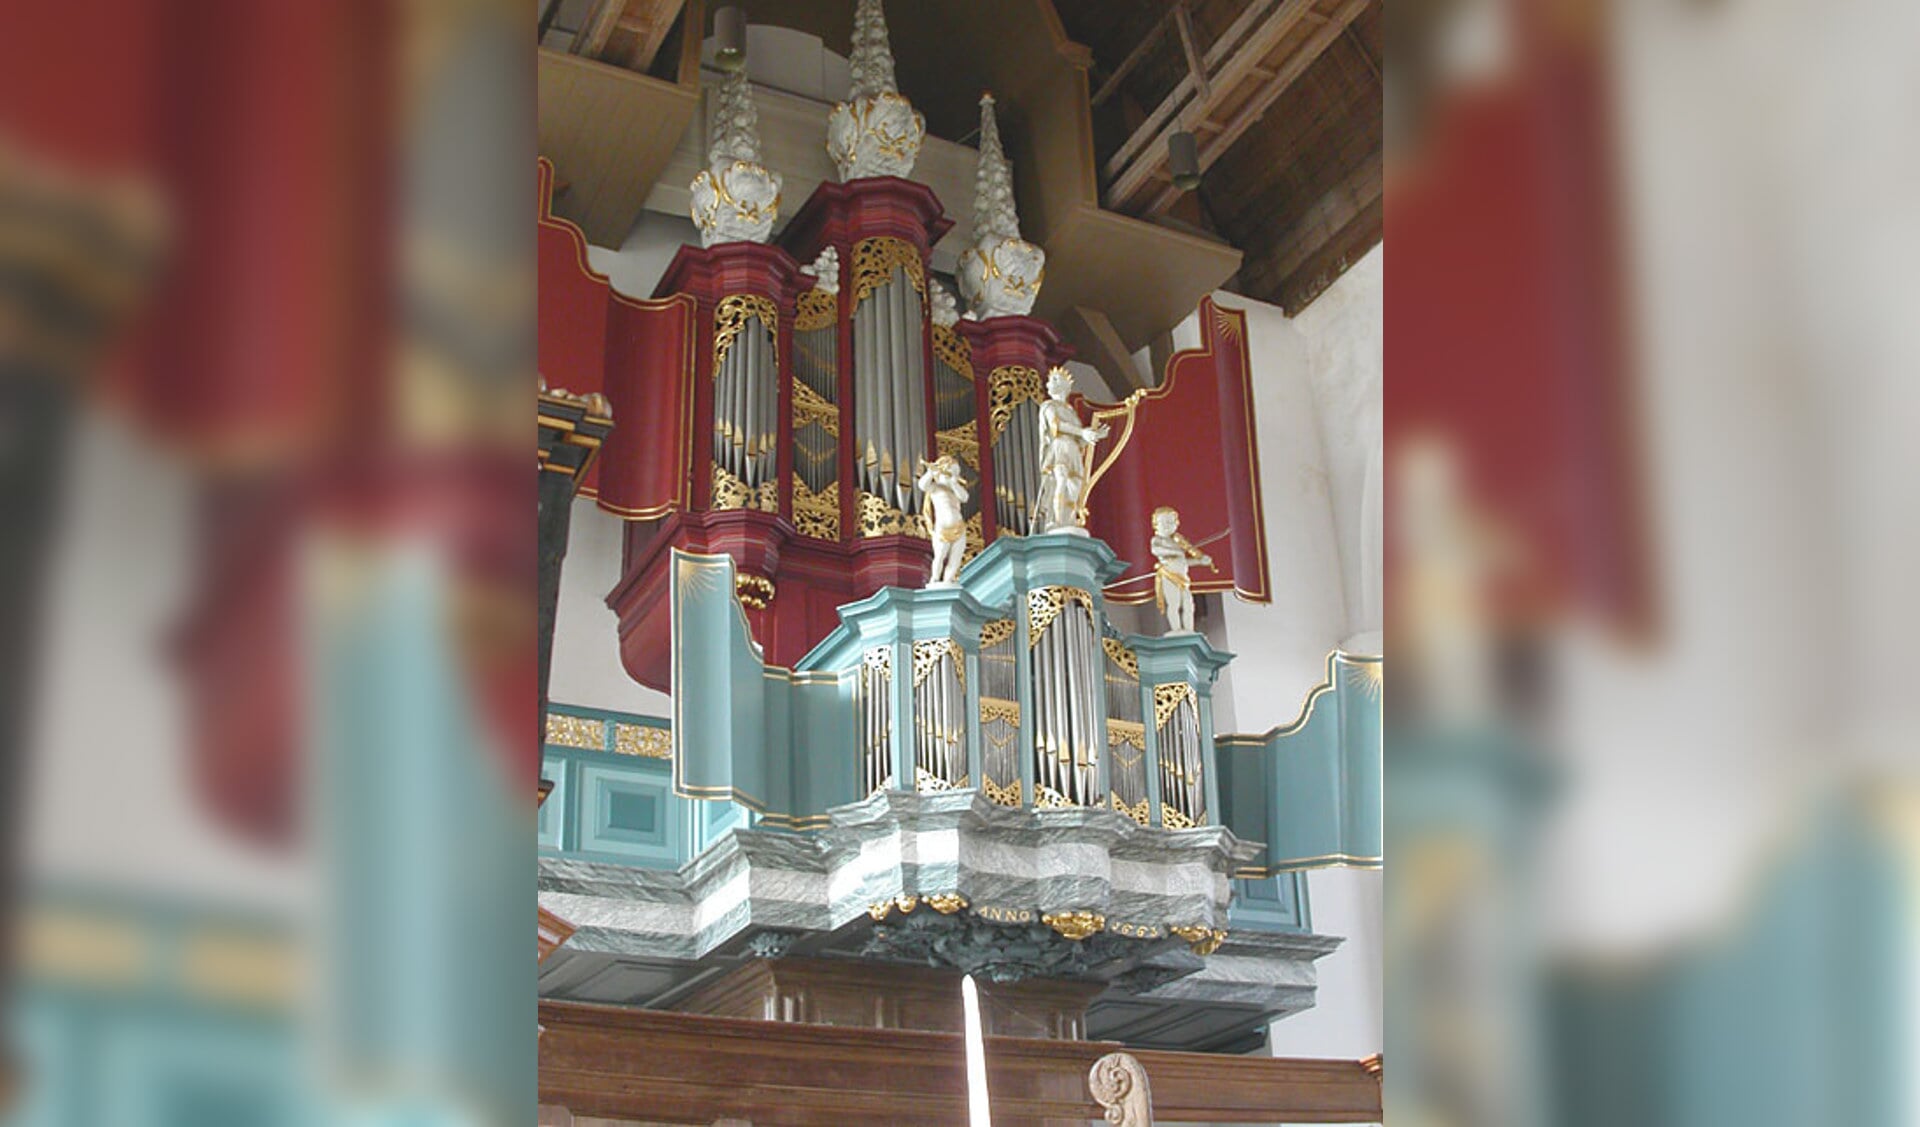 Prachtige orgel in de kerk in Edam. (Foto: aangeleverd)